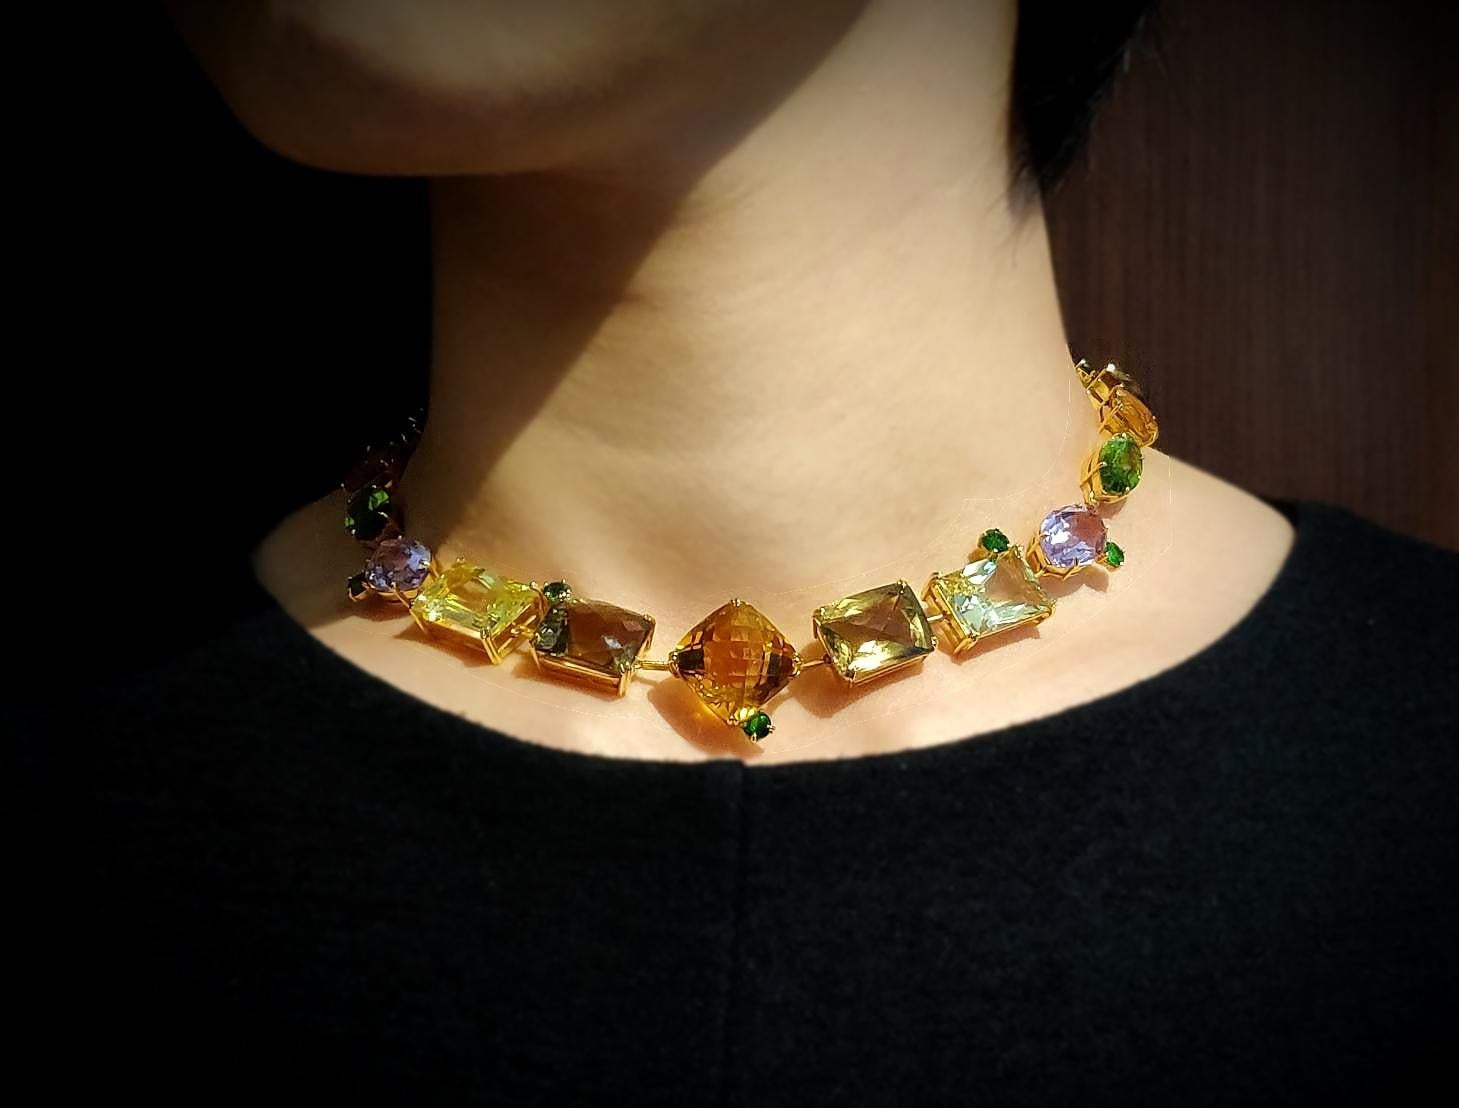 Contemporary Colourful Semi-Precious Stone Necklace 18K Yellow Gold Champagne Diamond Clasp For Sale